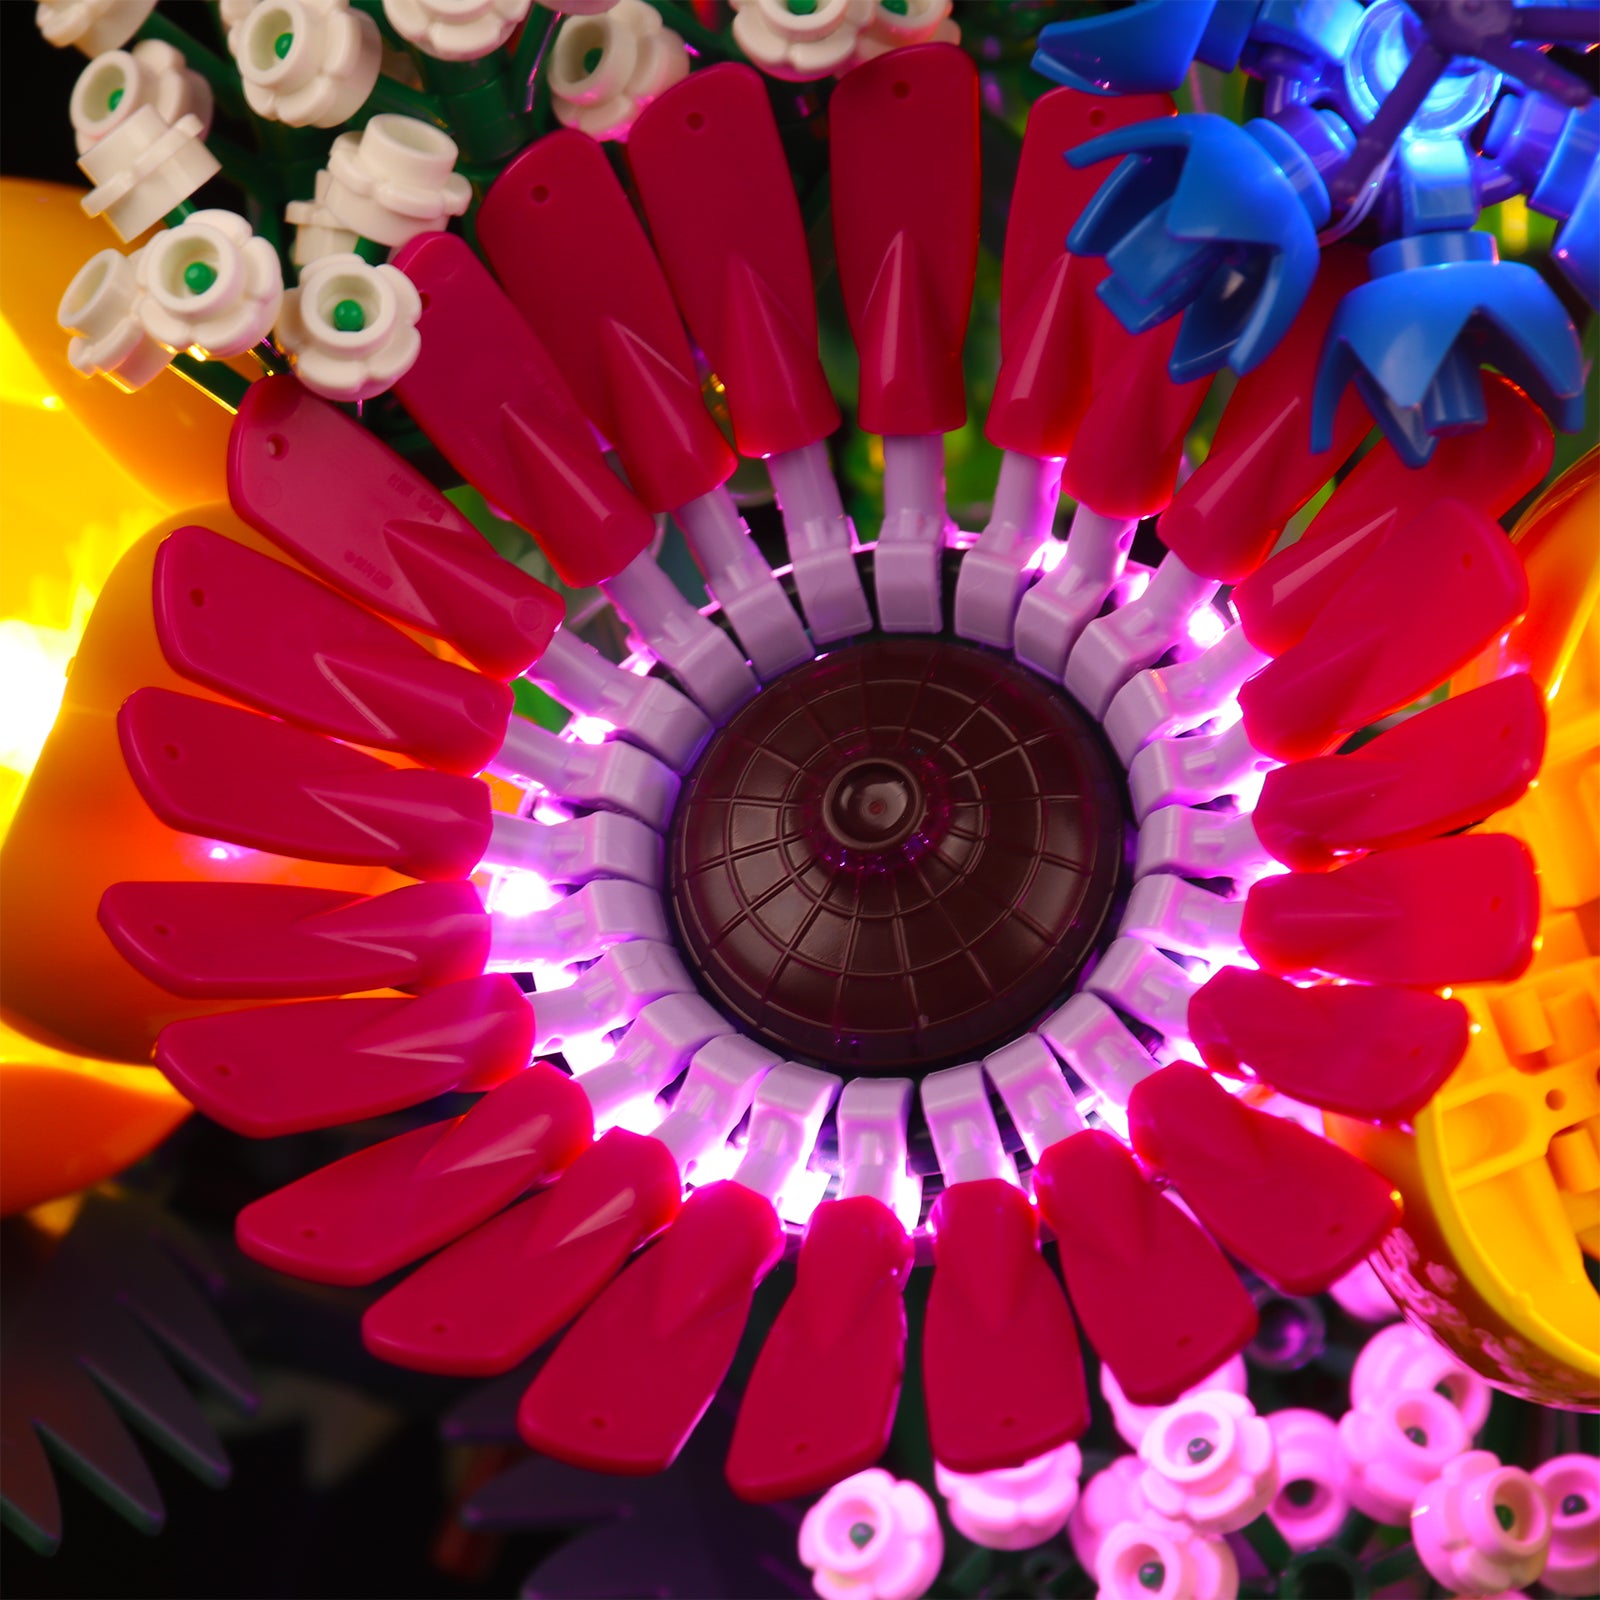 Lego®icons 10313 - bouquet de fleurs sauvages